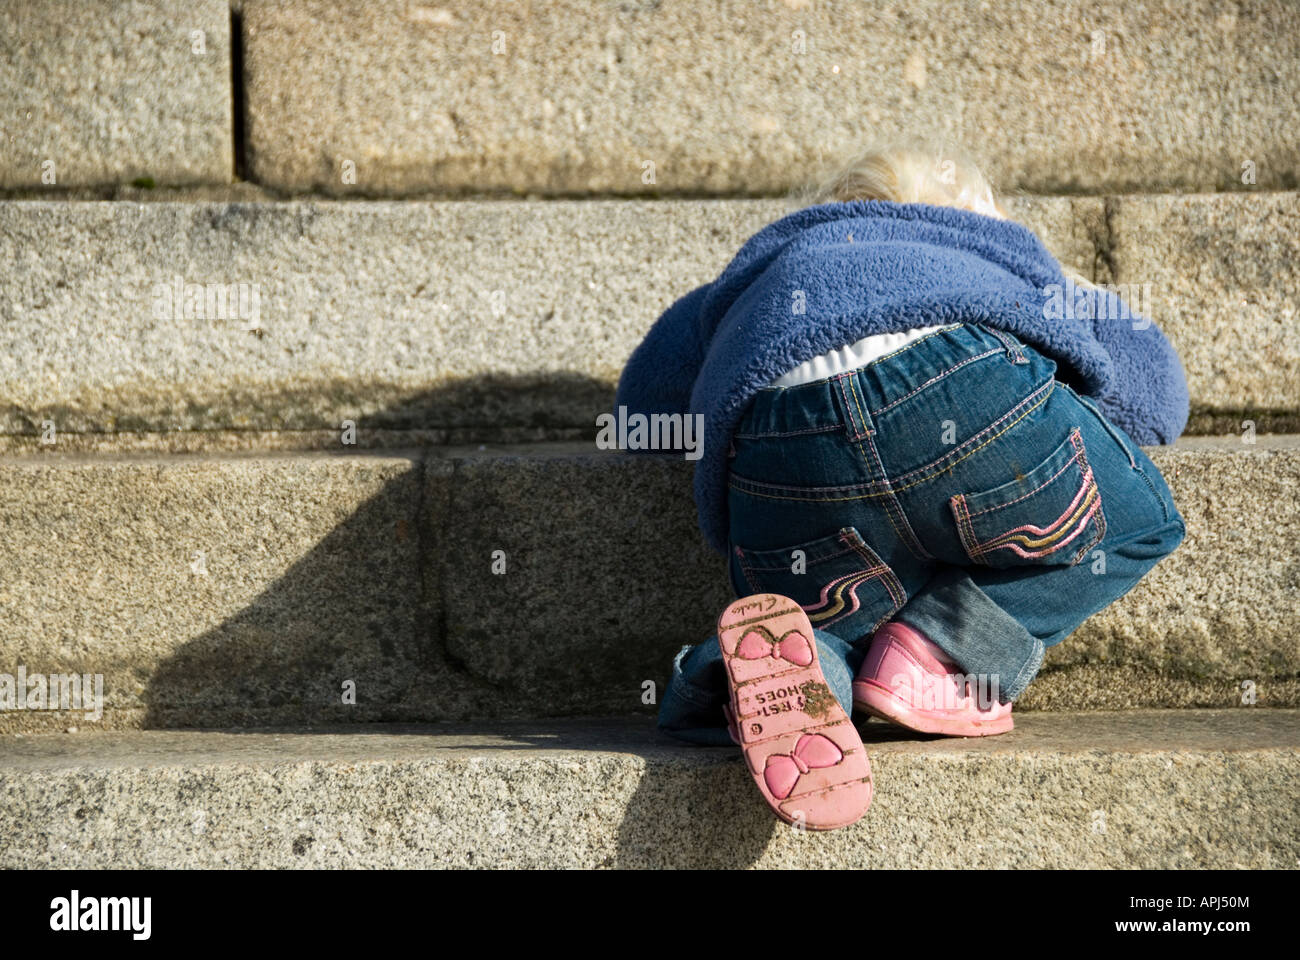 Stock Foto eines zwei Jahre alten Kleinkindes klettern sehr Carefullu nach hinten unten eine Reihe von Schritten Stockfoto